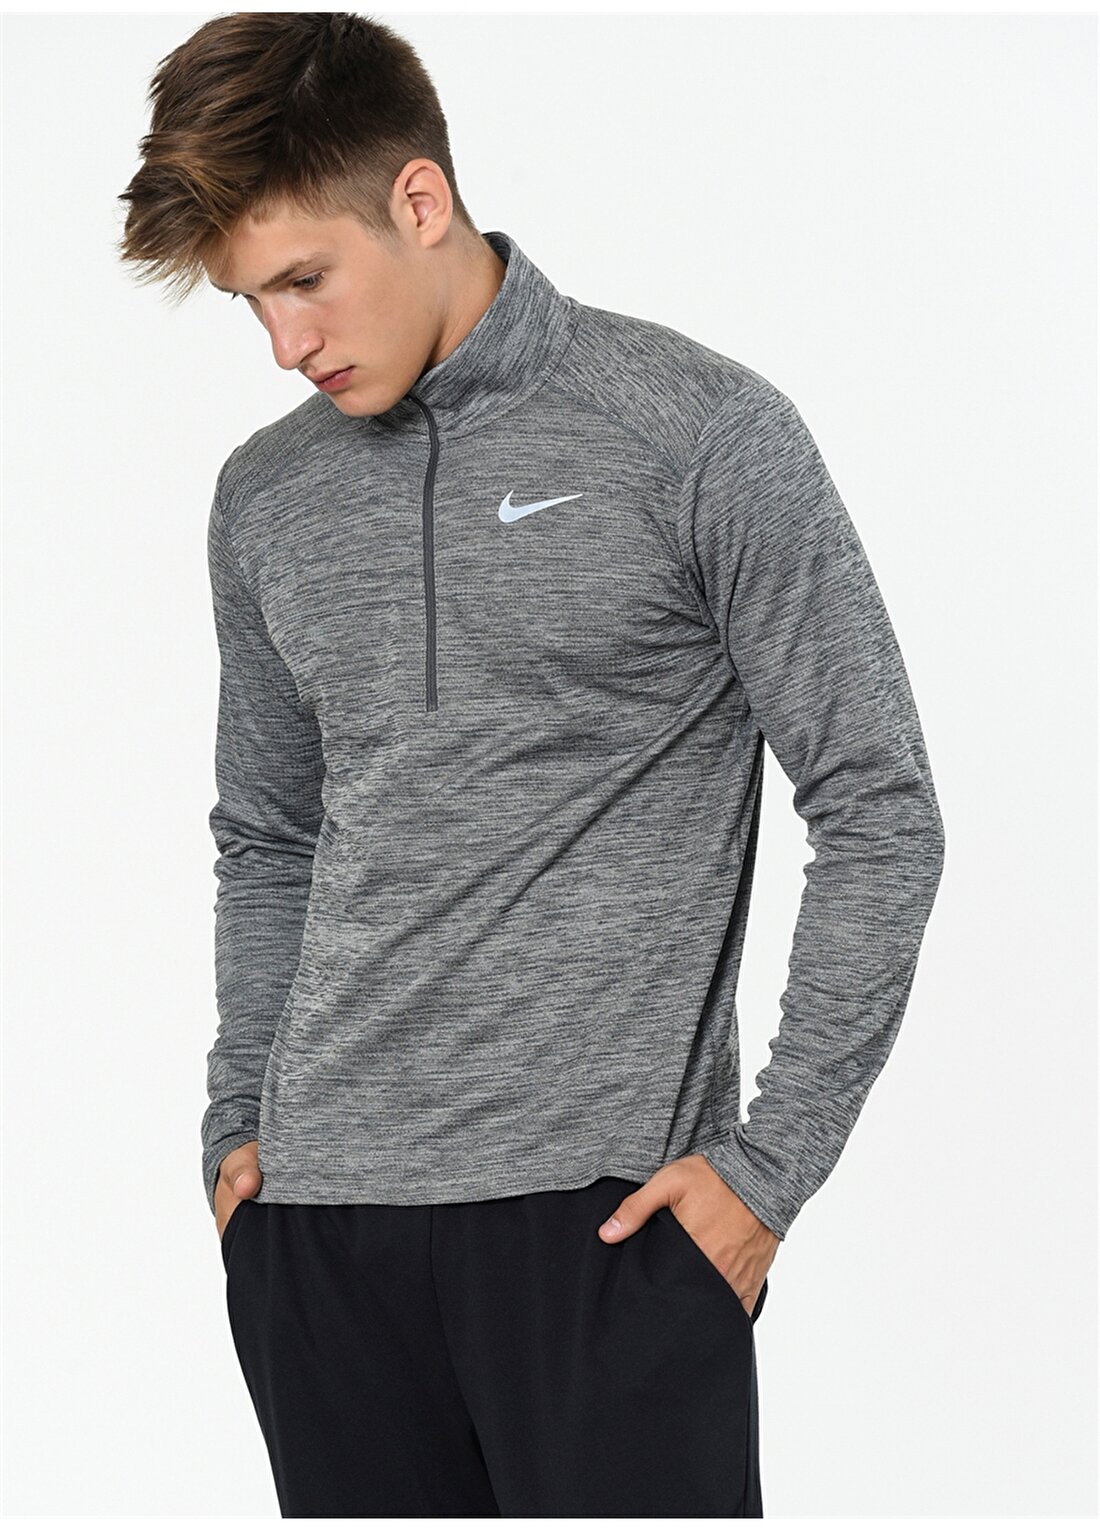 Nike Pacer Gri Erkek Sweatshirt